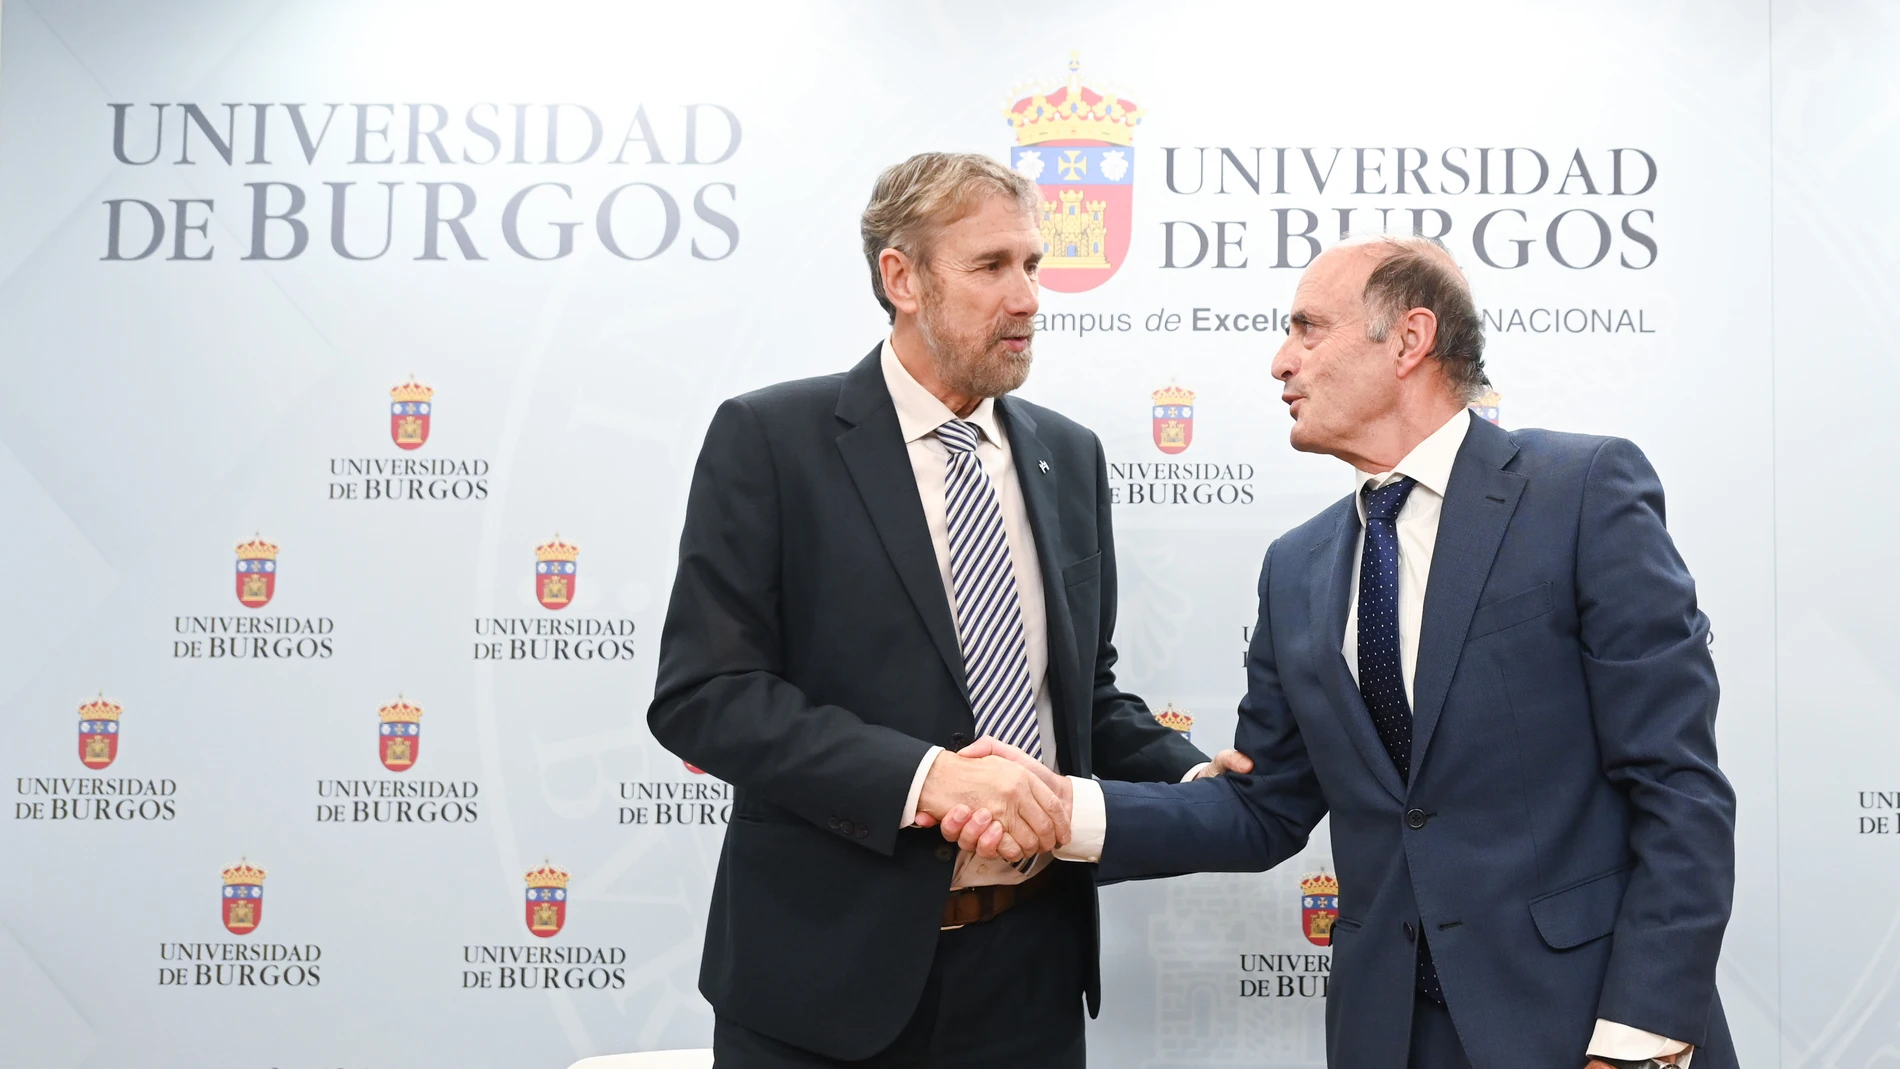 La Universidad de Burgos y el Instituto Tecnológico de Castilla y León presentan la nueva Cátedra de Inteligencia Artificial de la Universidad de Burgos